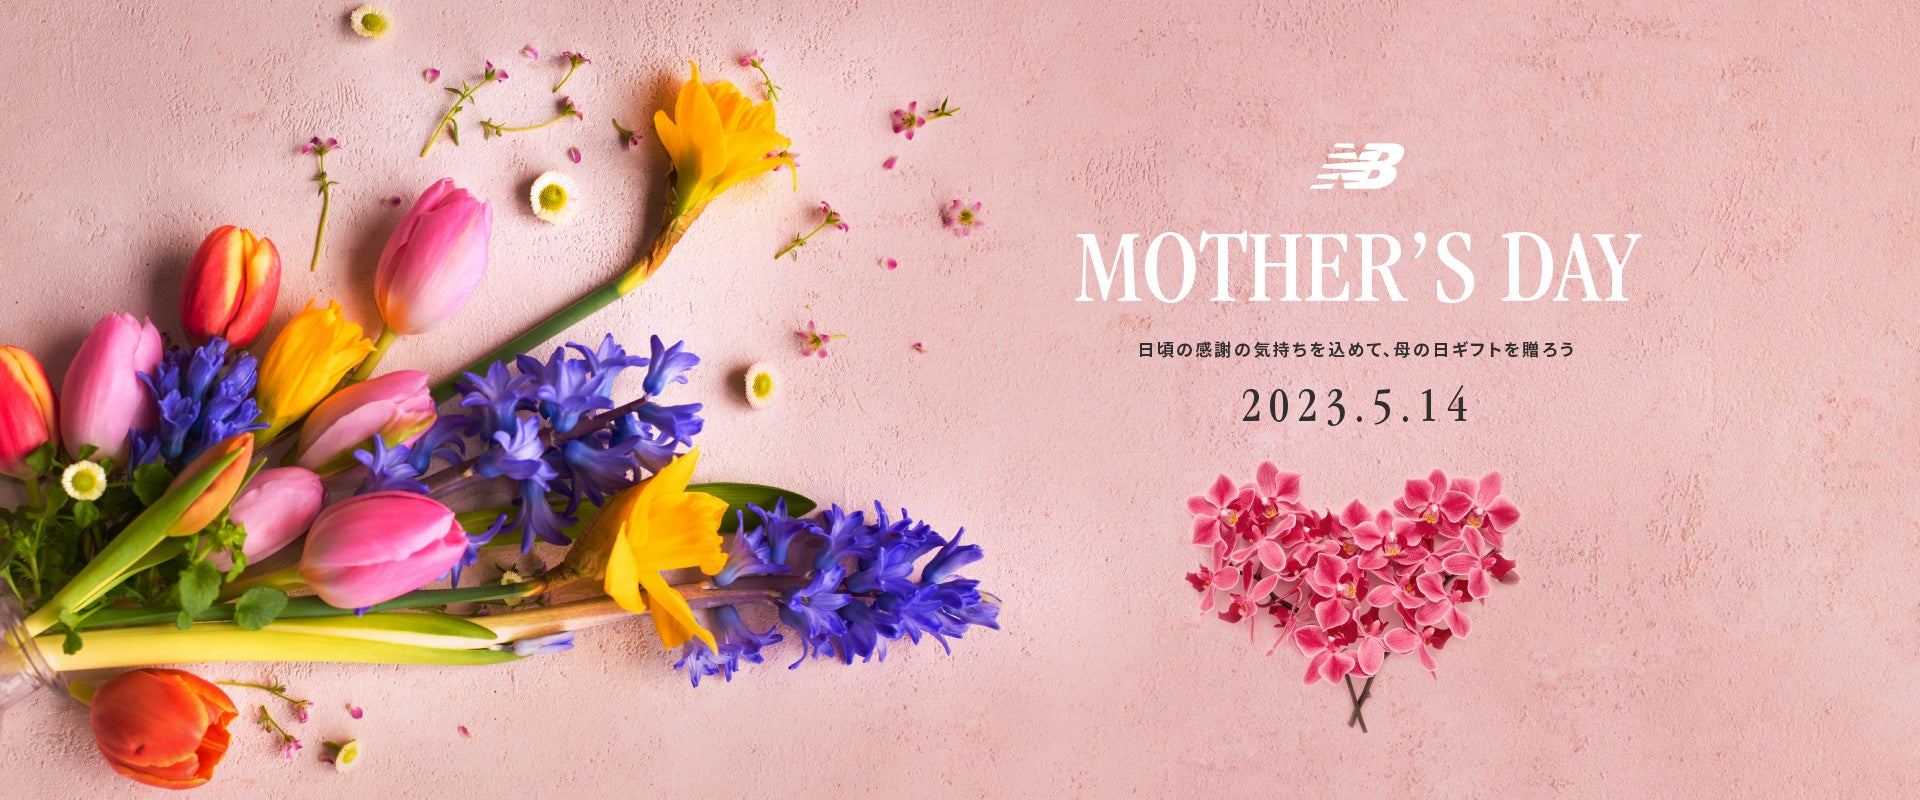 日頃の感謝の気持ちを込めて、母の日ギフトを贈ろう。Mother's Day 2022年5月8日